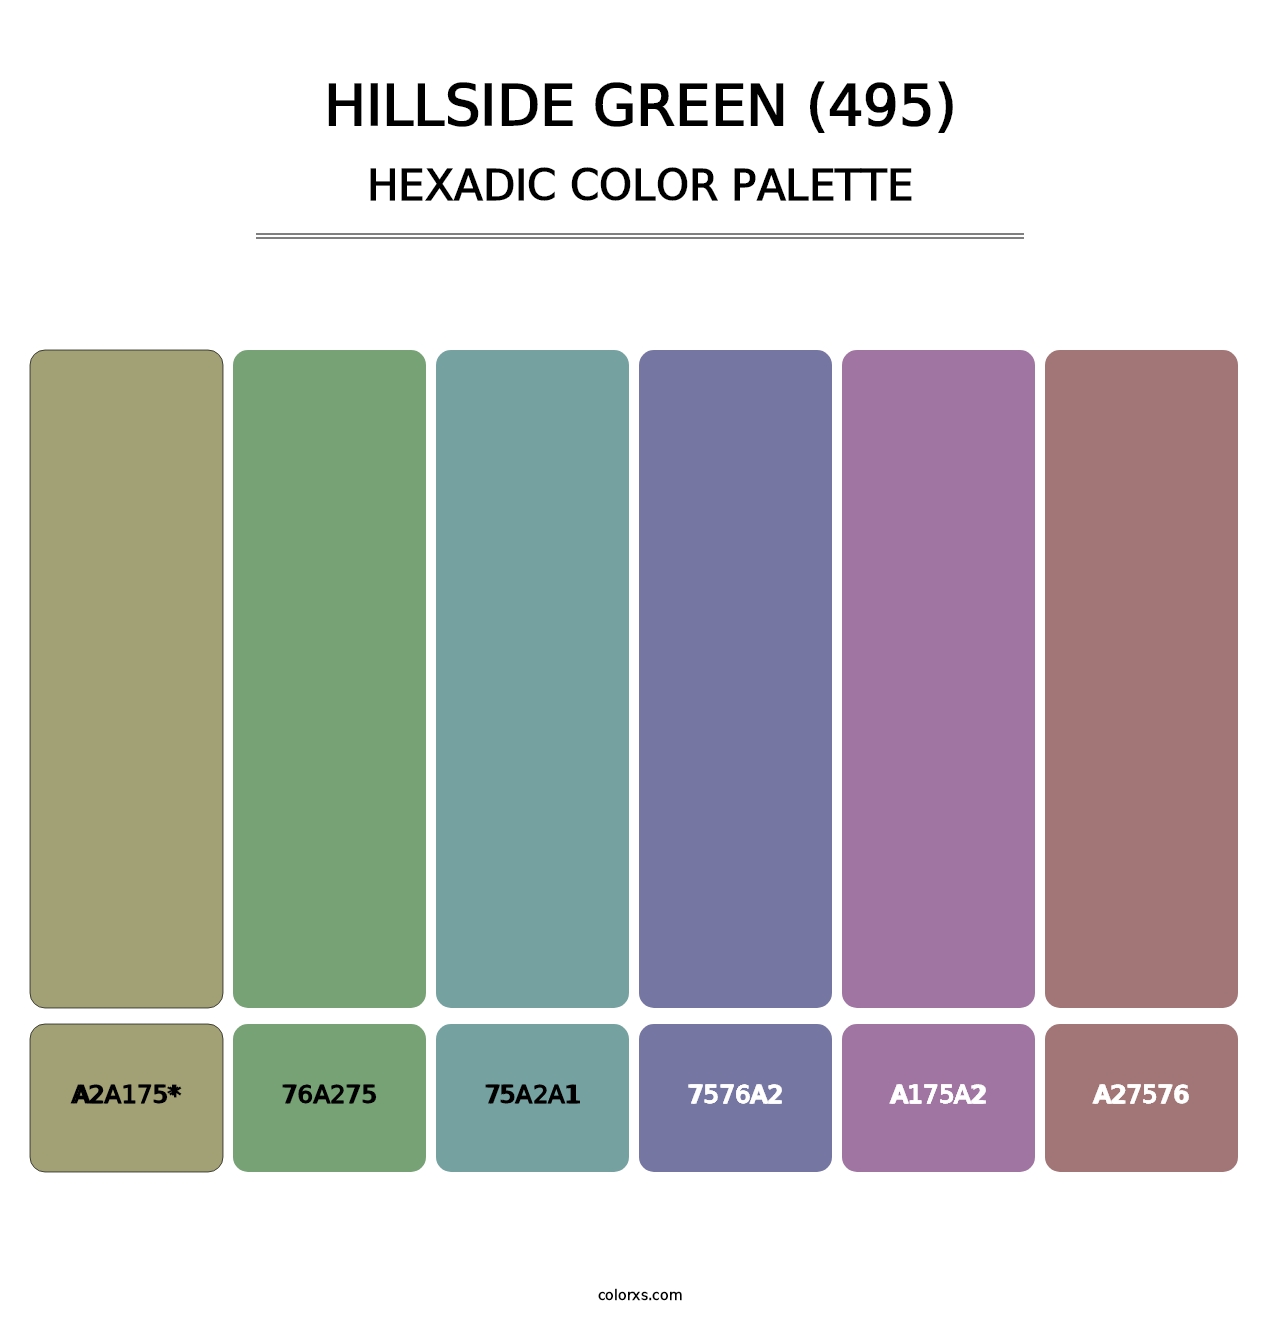 Hillside Green (495) - Hexadic Color Palette